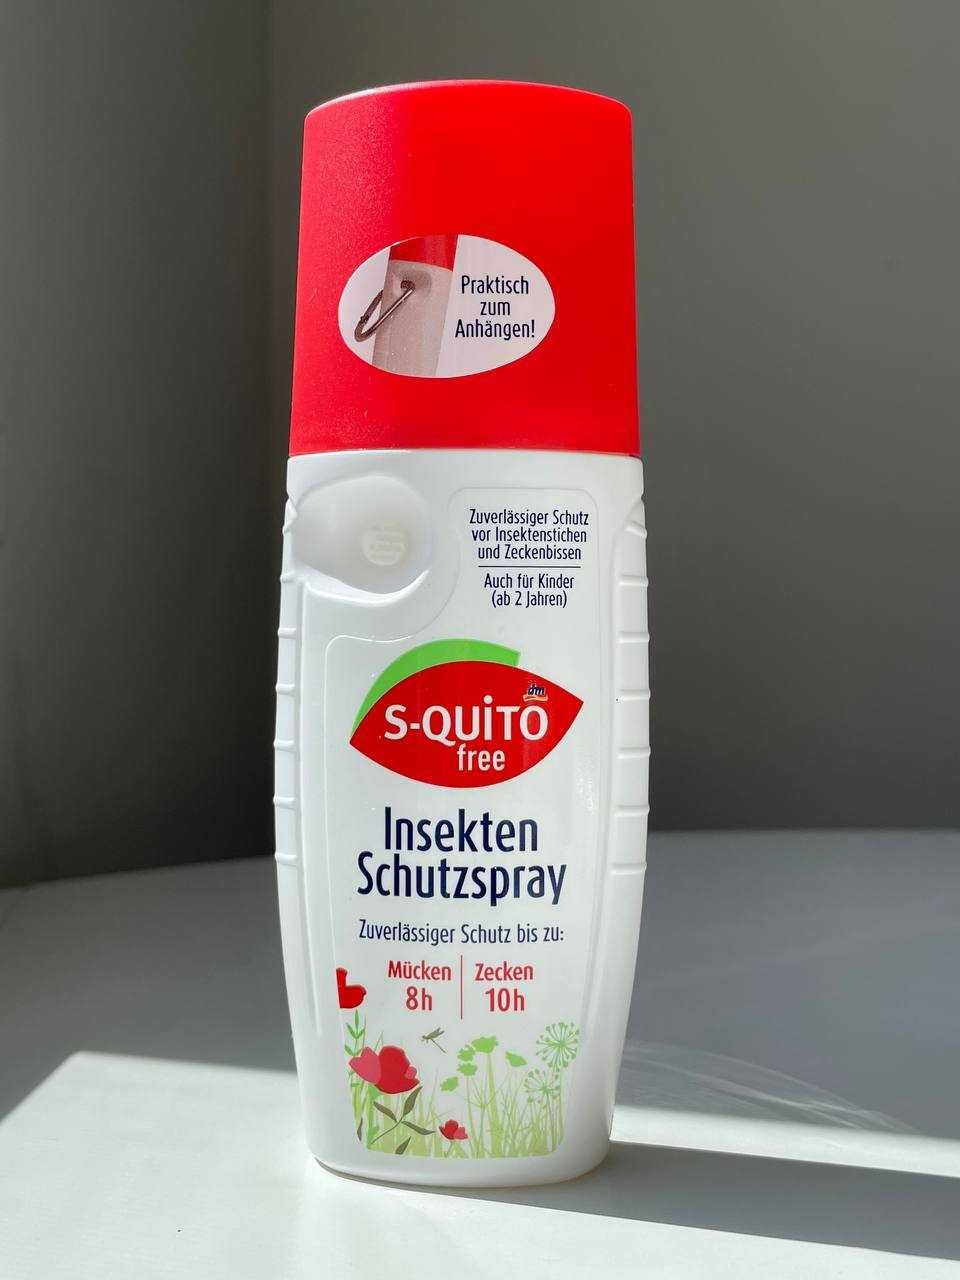 S-quito free захист від укусів комах для дорослих та дітей асортимент